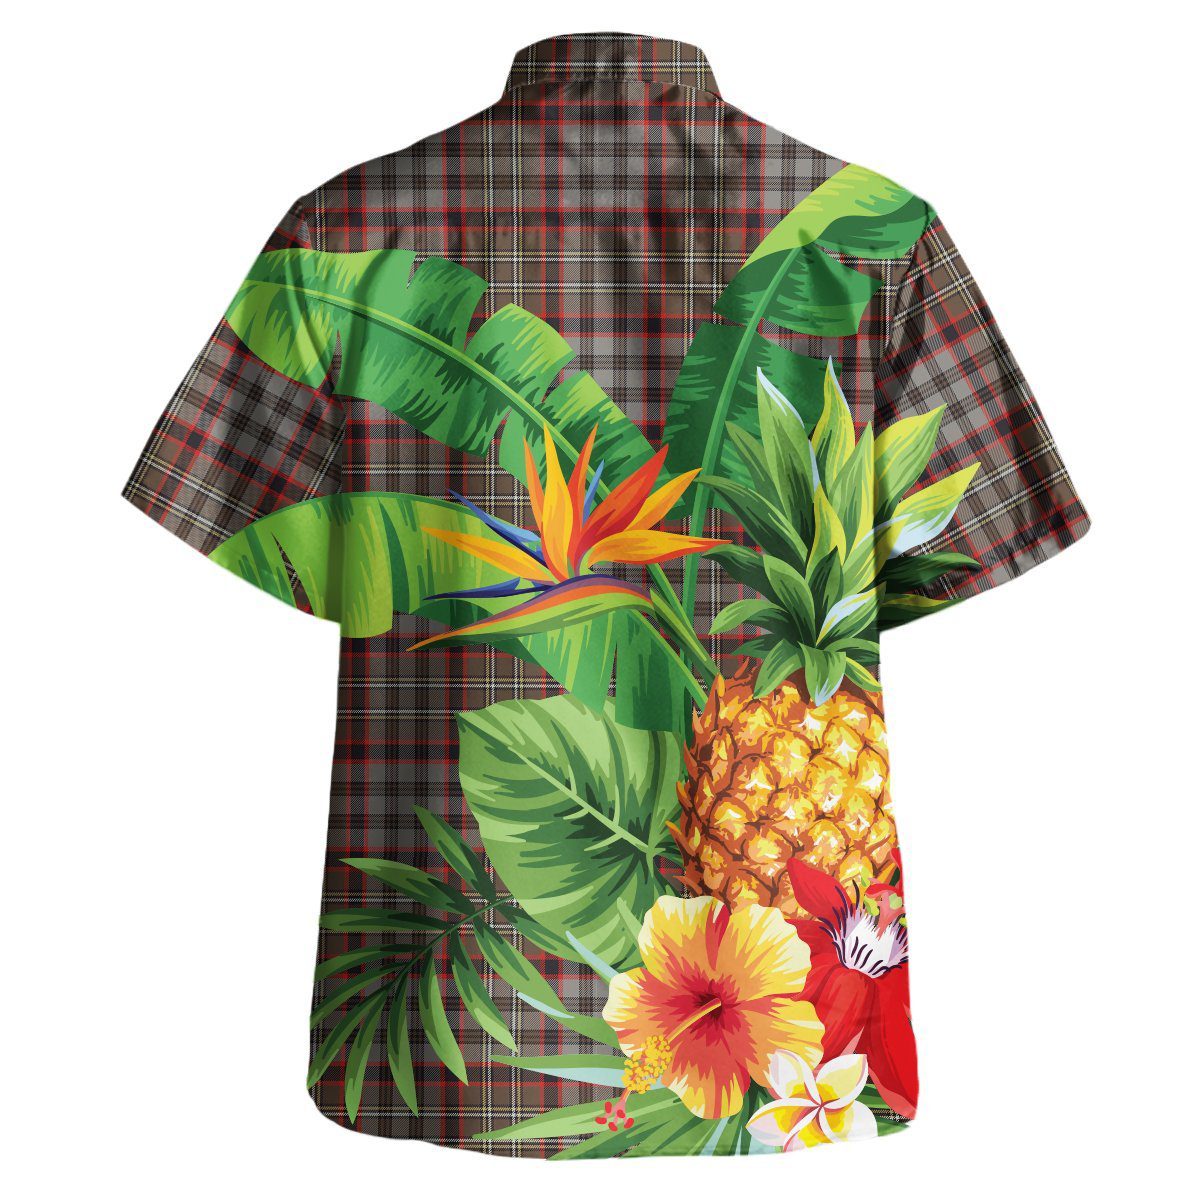 Nicolson Hunting Weathered Tartan Aloha Shirt version 2